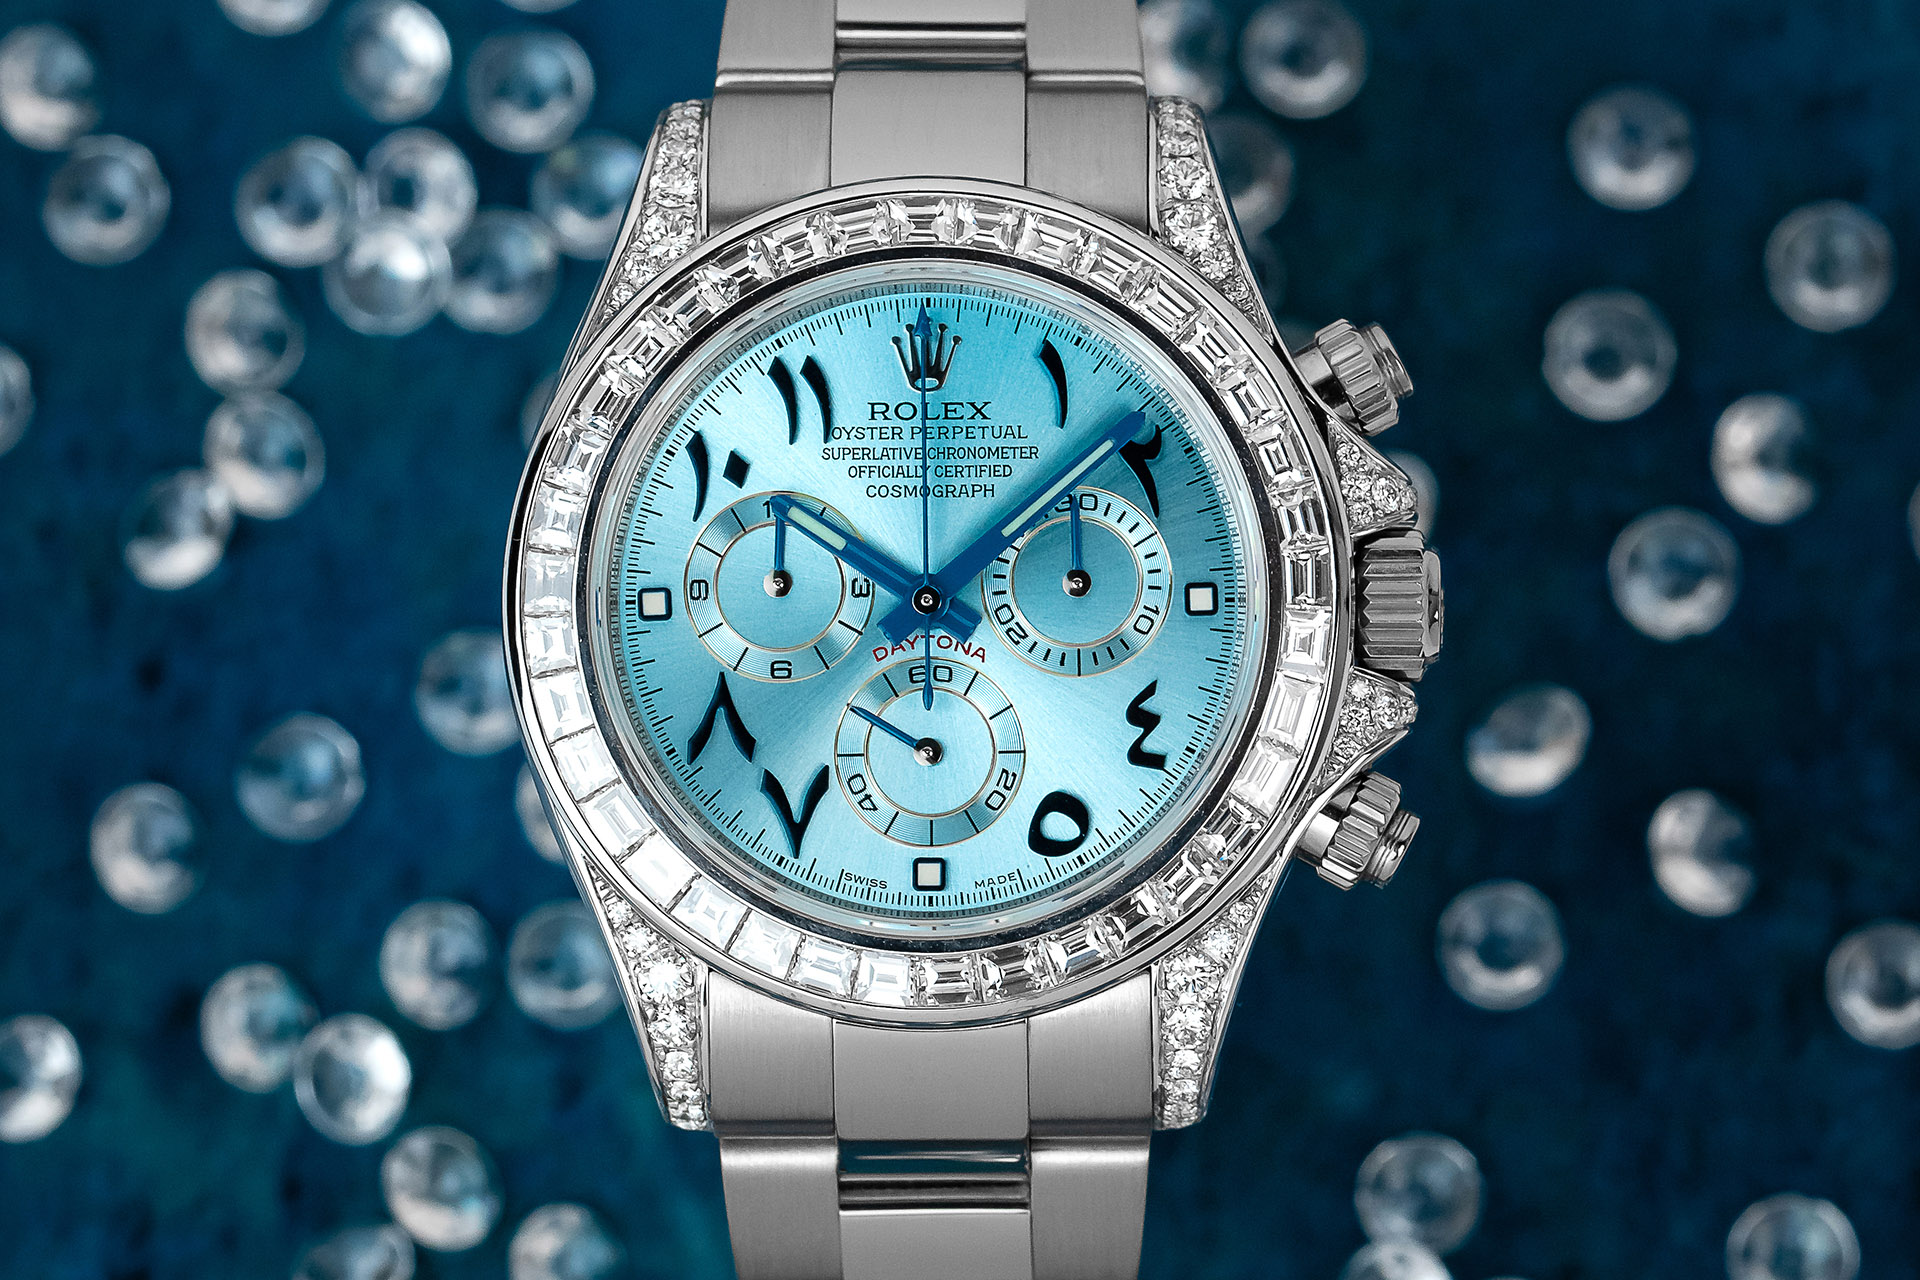 Diamond Rolex Watches Price List